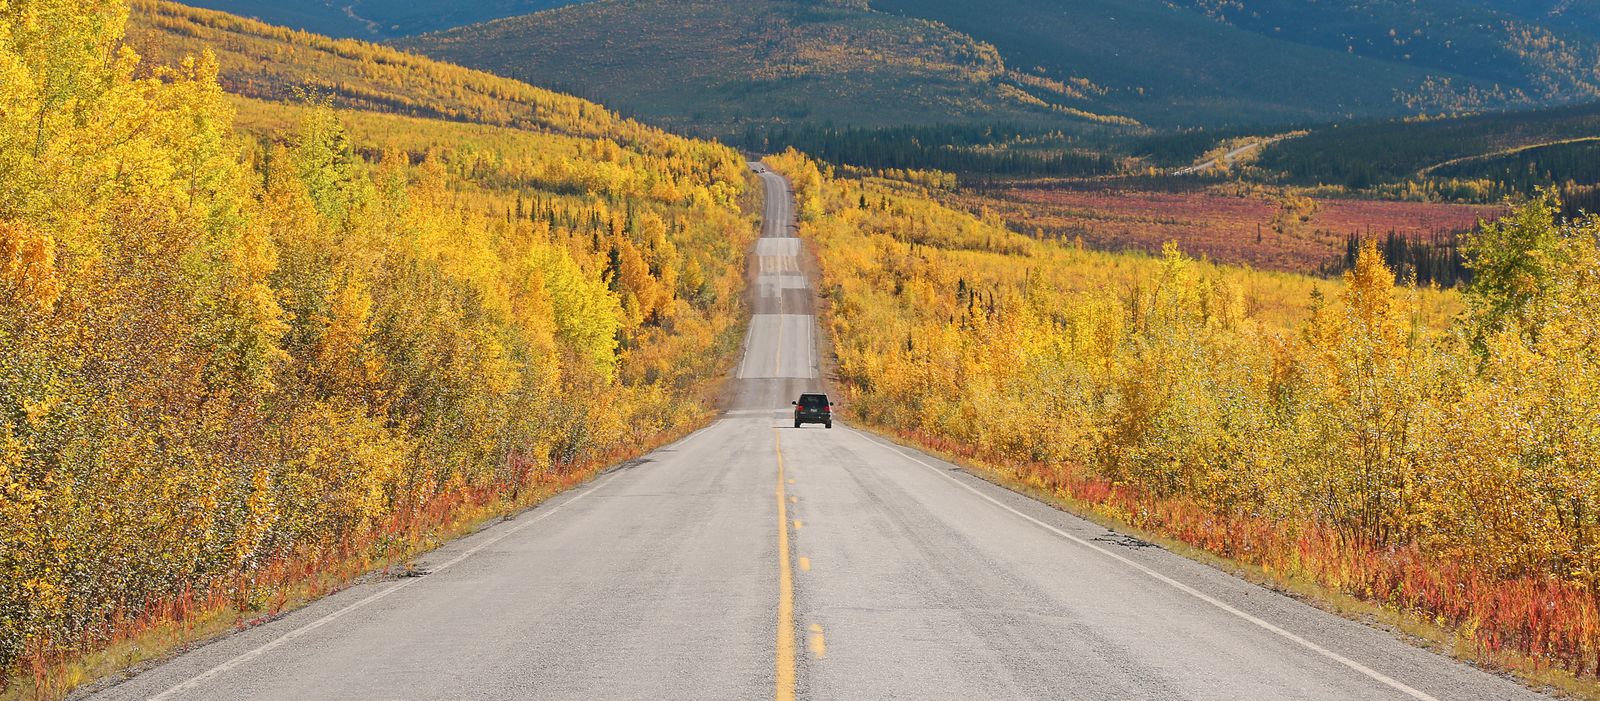 Ein Highway in Alaska in herbstlichen Farben